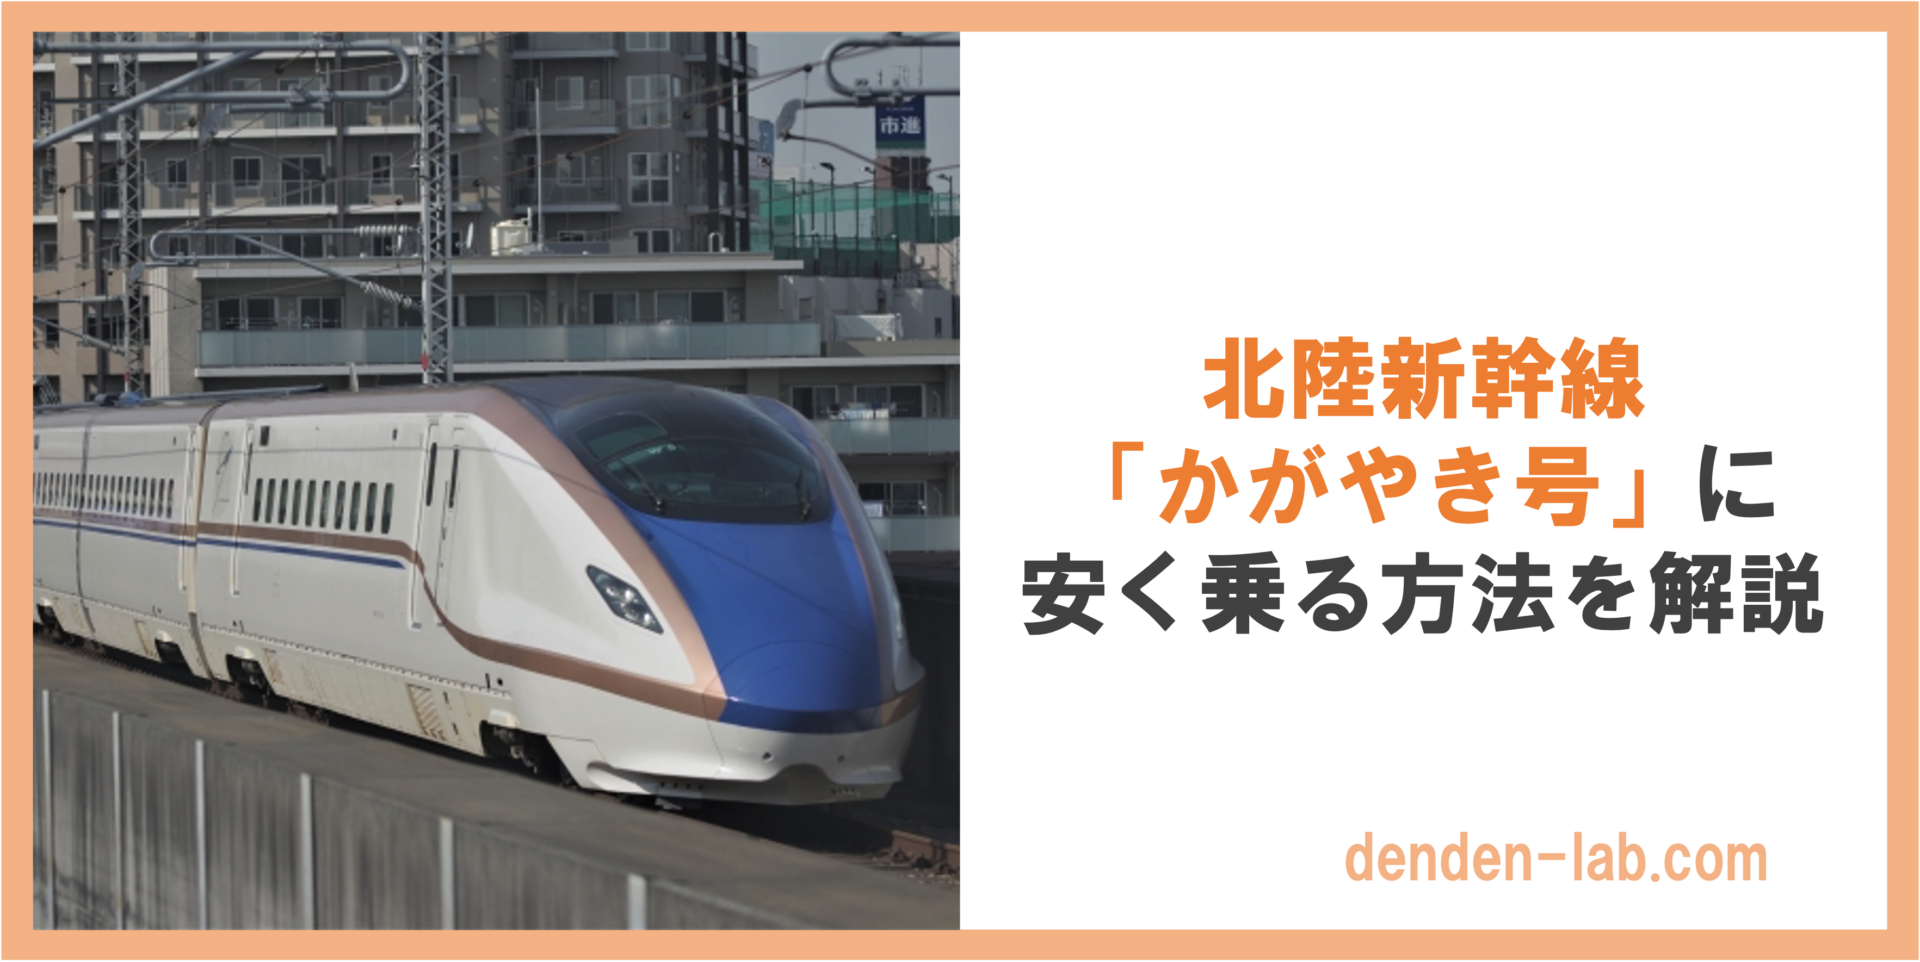 北陸新幹線 「かがやき号」に 安く乗る方法を解説